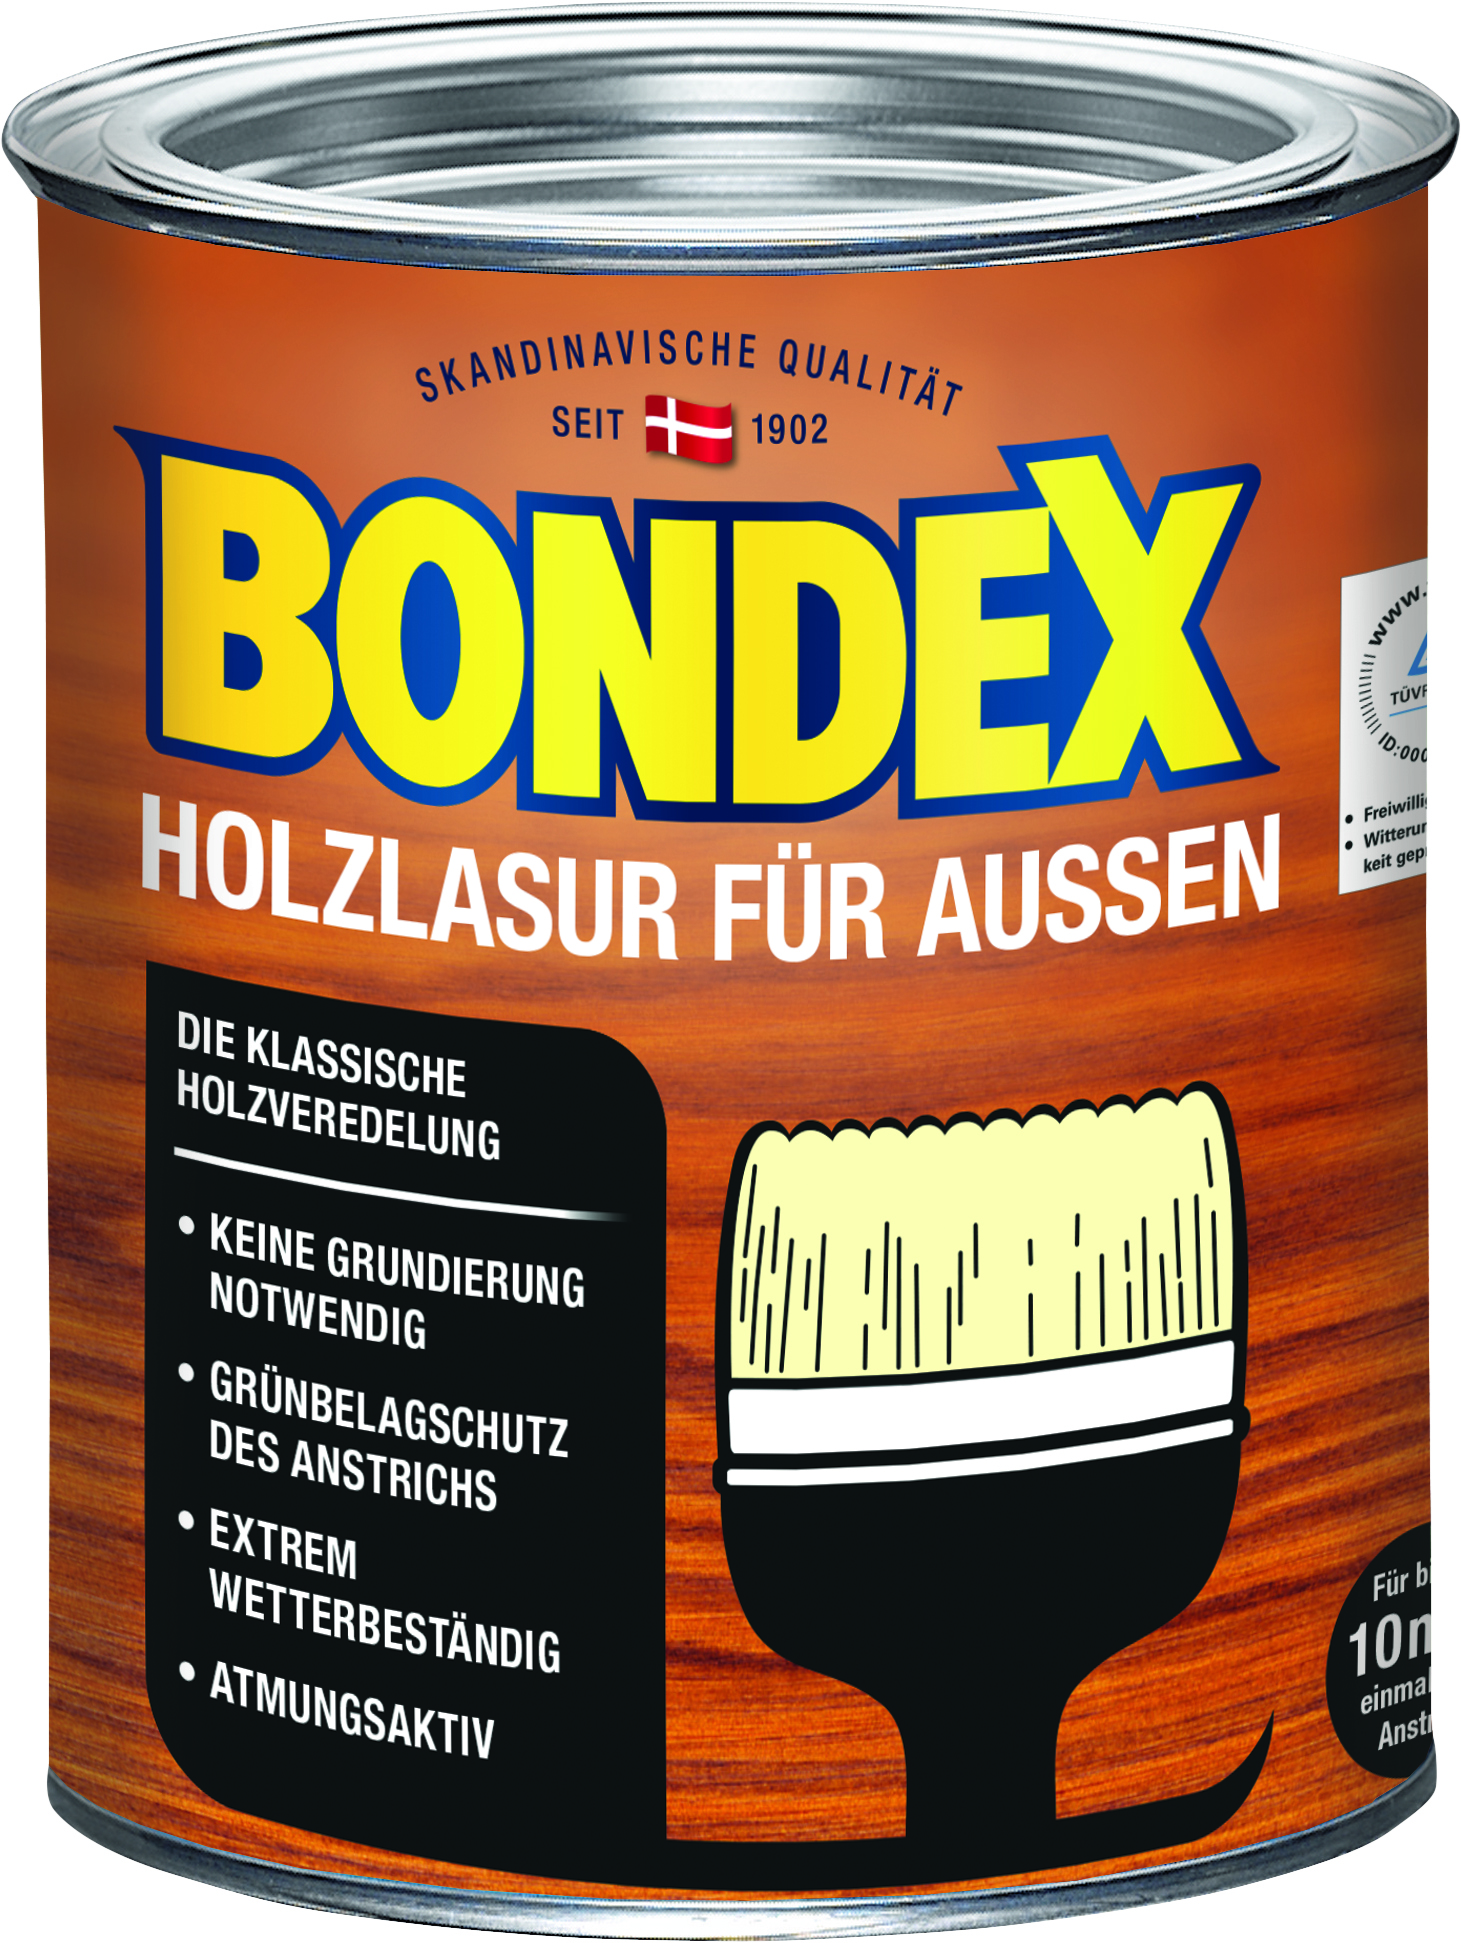 Bondex Holzlasur für Außen Kalk weiß, 750ml